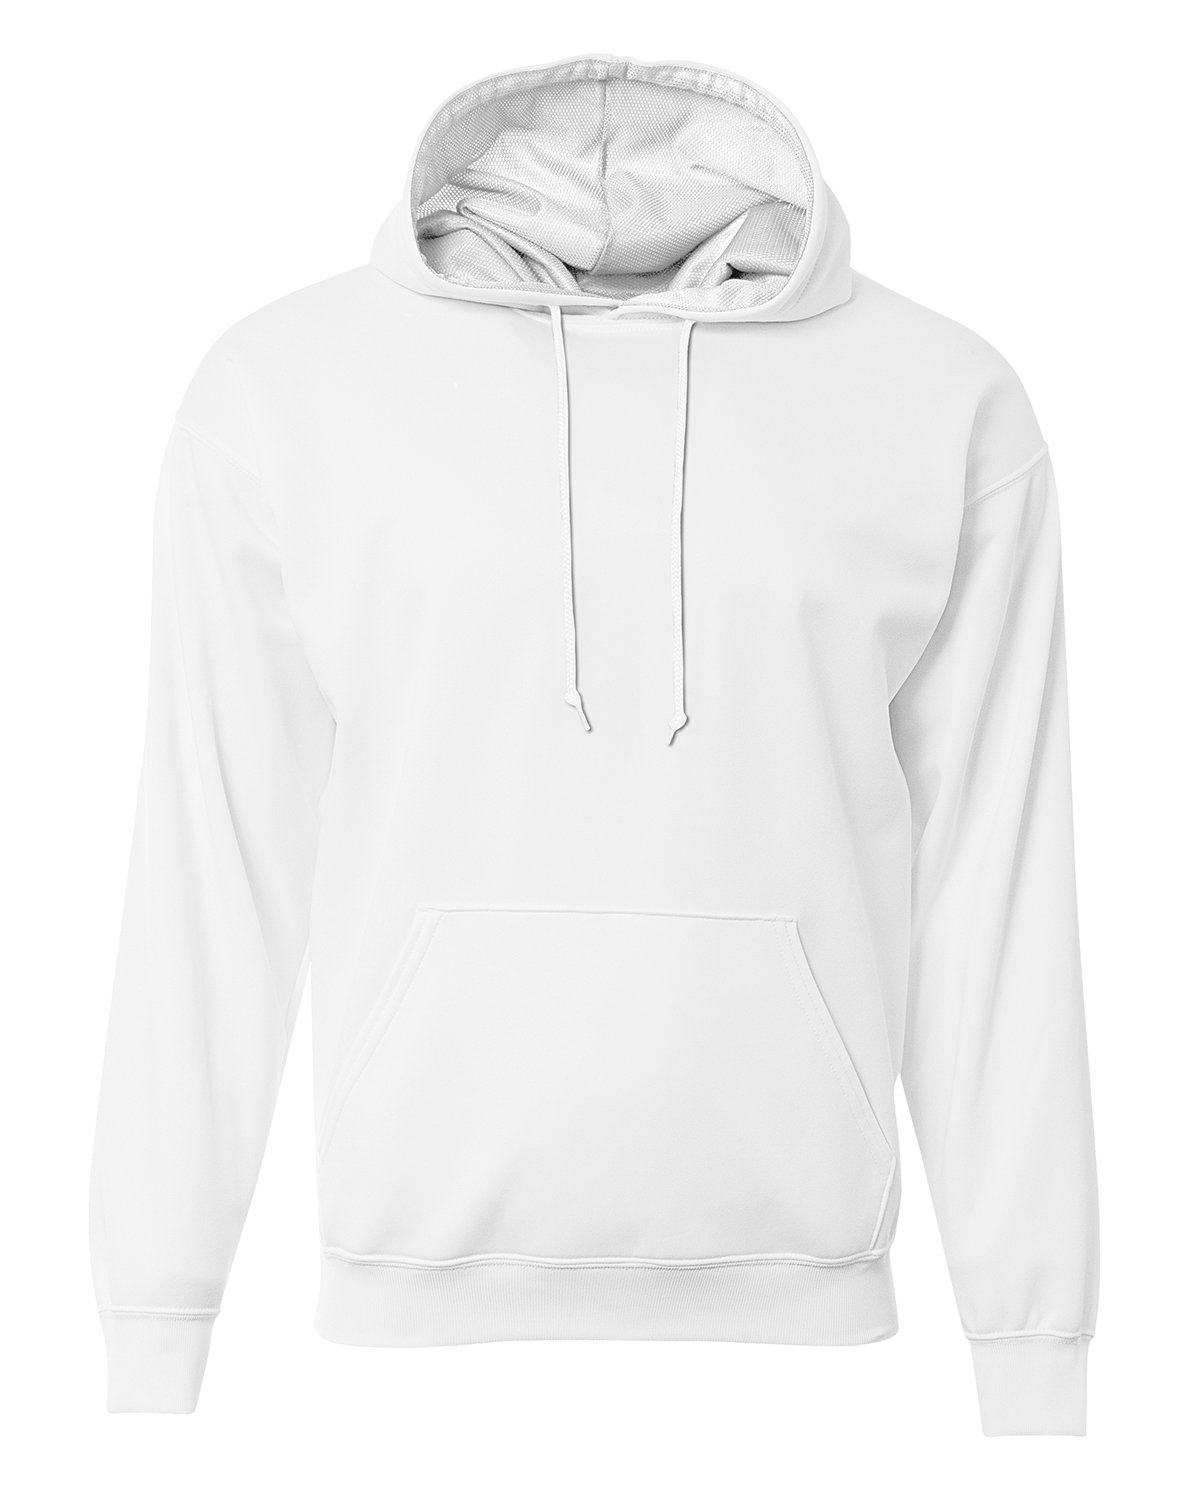 Mens Sprint Tech Fleece Hooded Sweatshirt-A4